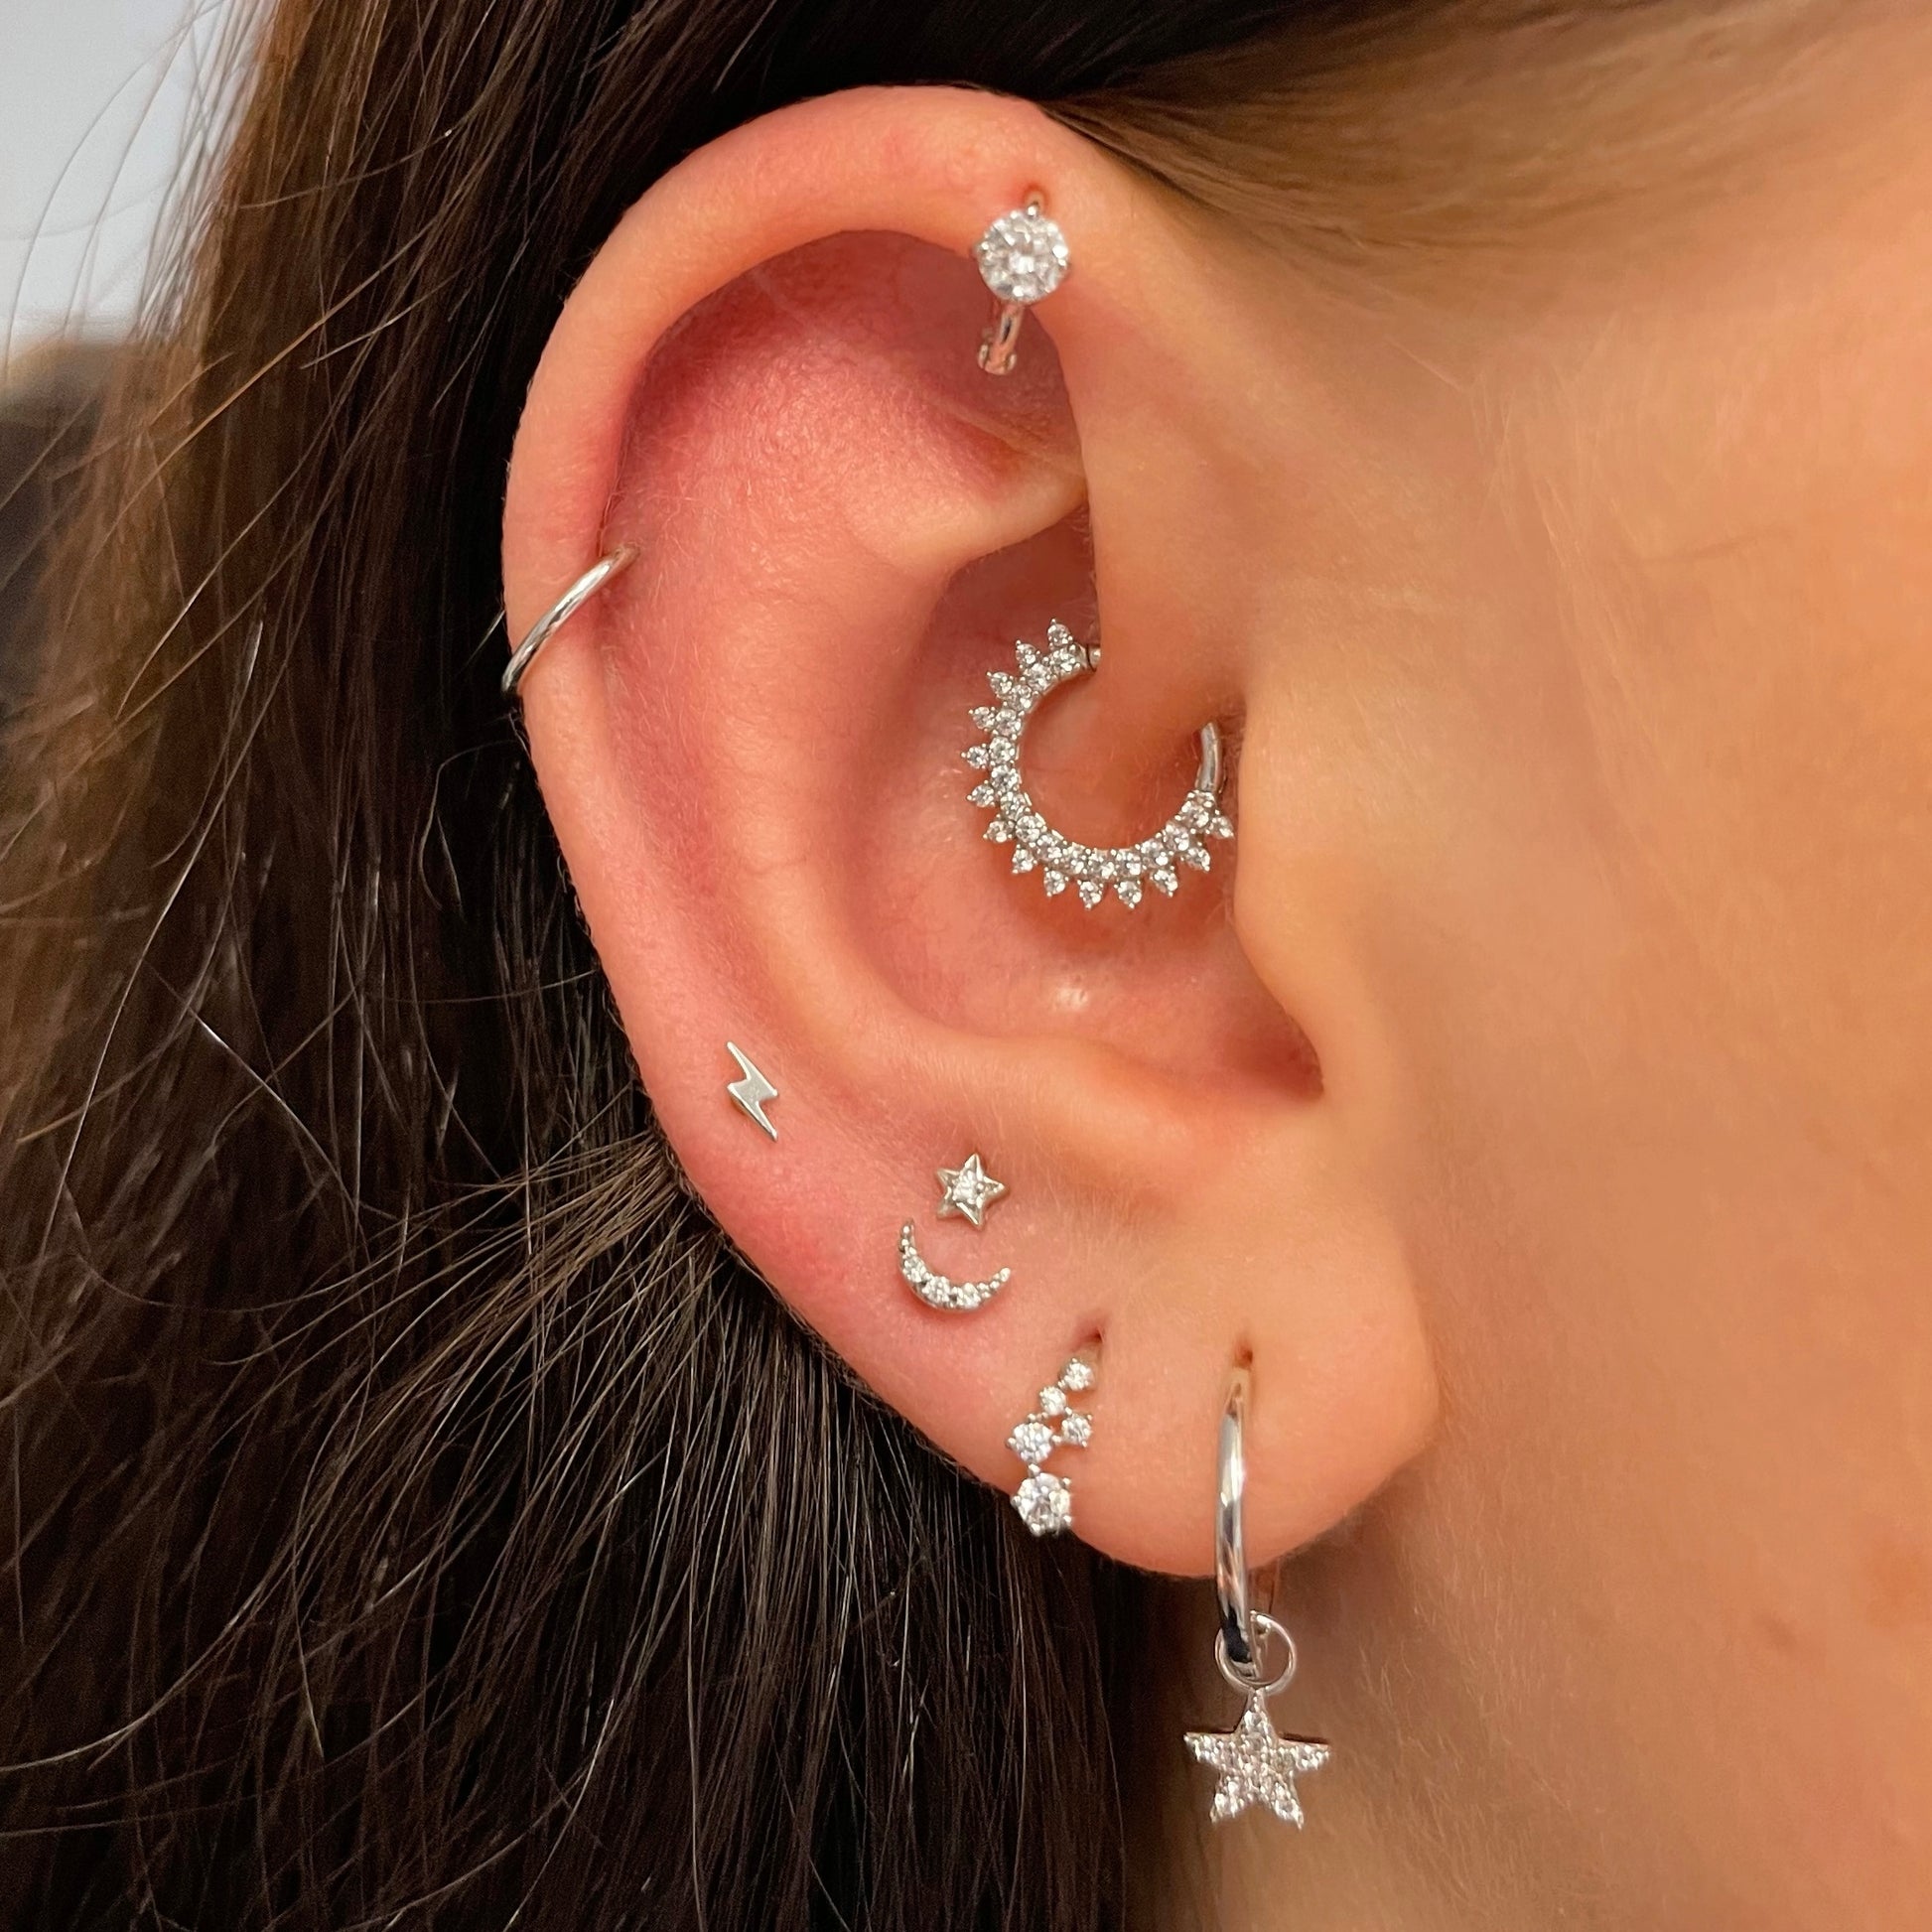 stacking ear piercings